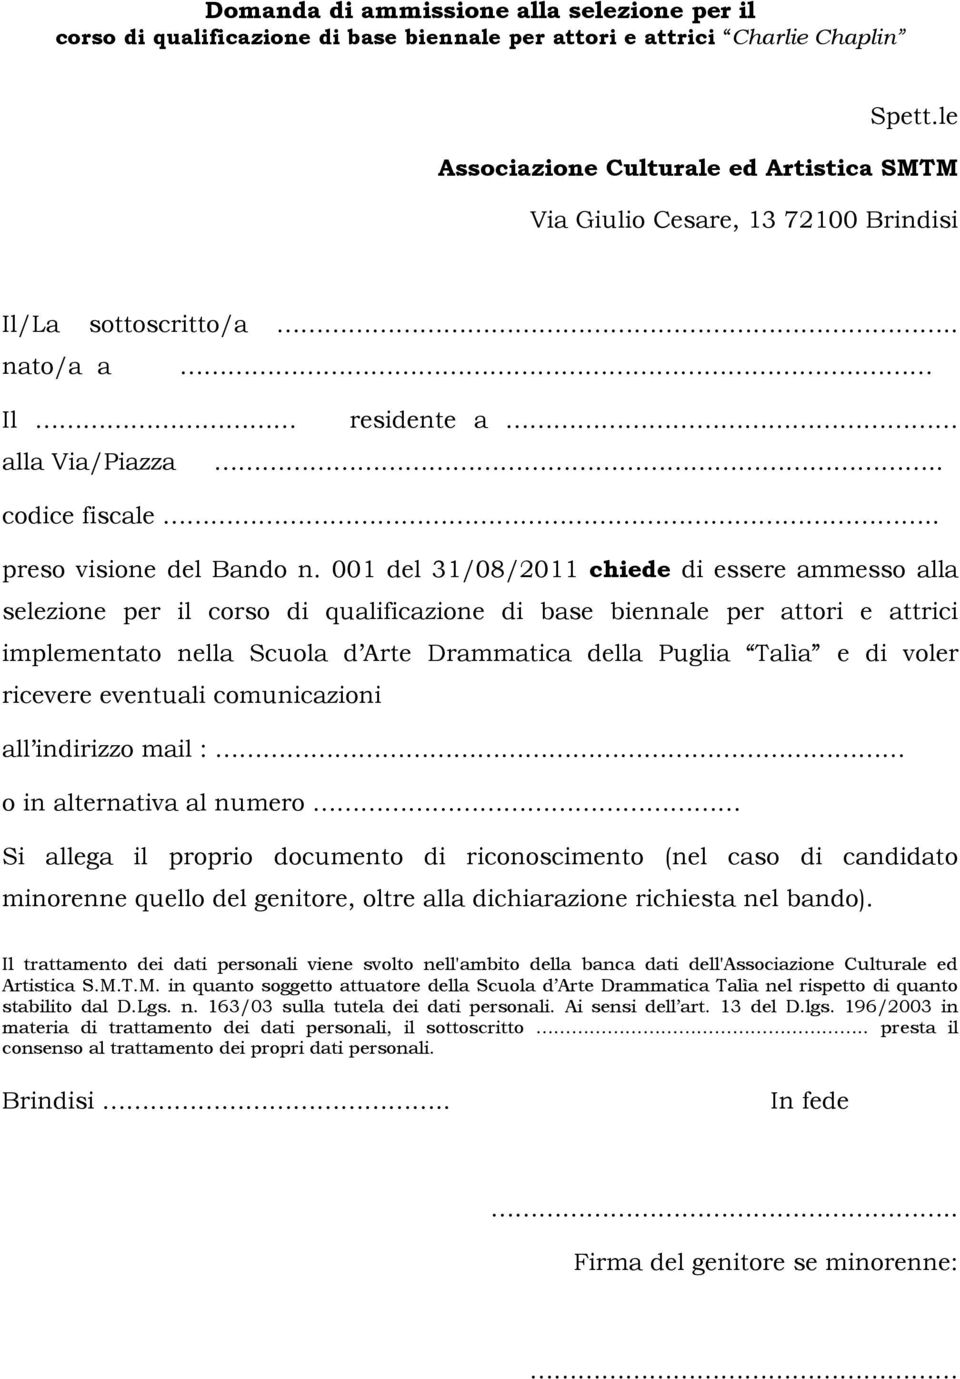 001 del 31/08/2011 chiede di essere ammesso alla selezione per il corso di qualificazione di base biennale per attori e attrici implementato nella Scuola d Arte Drammatica della Puglia Talìa e di